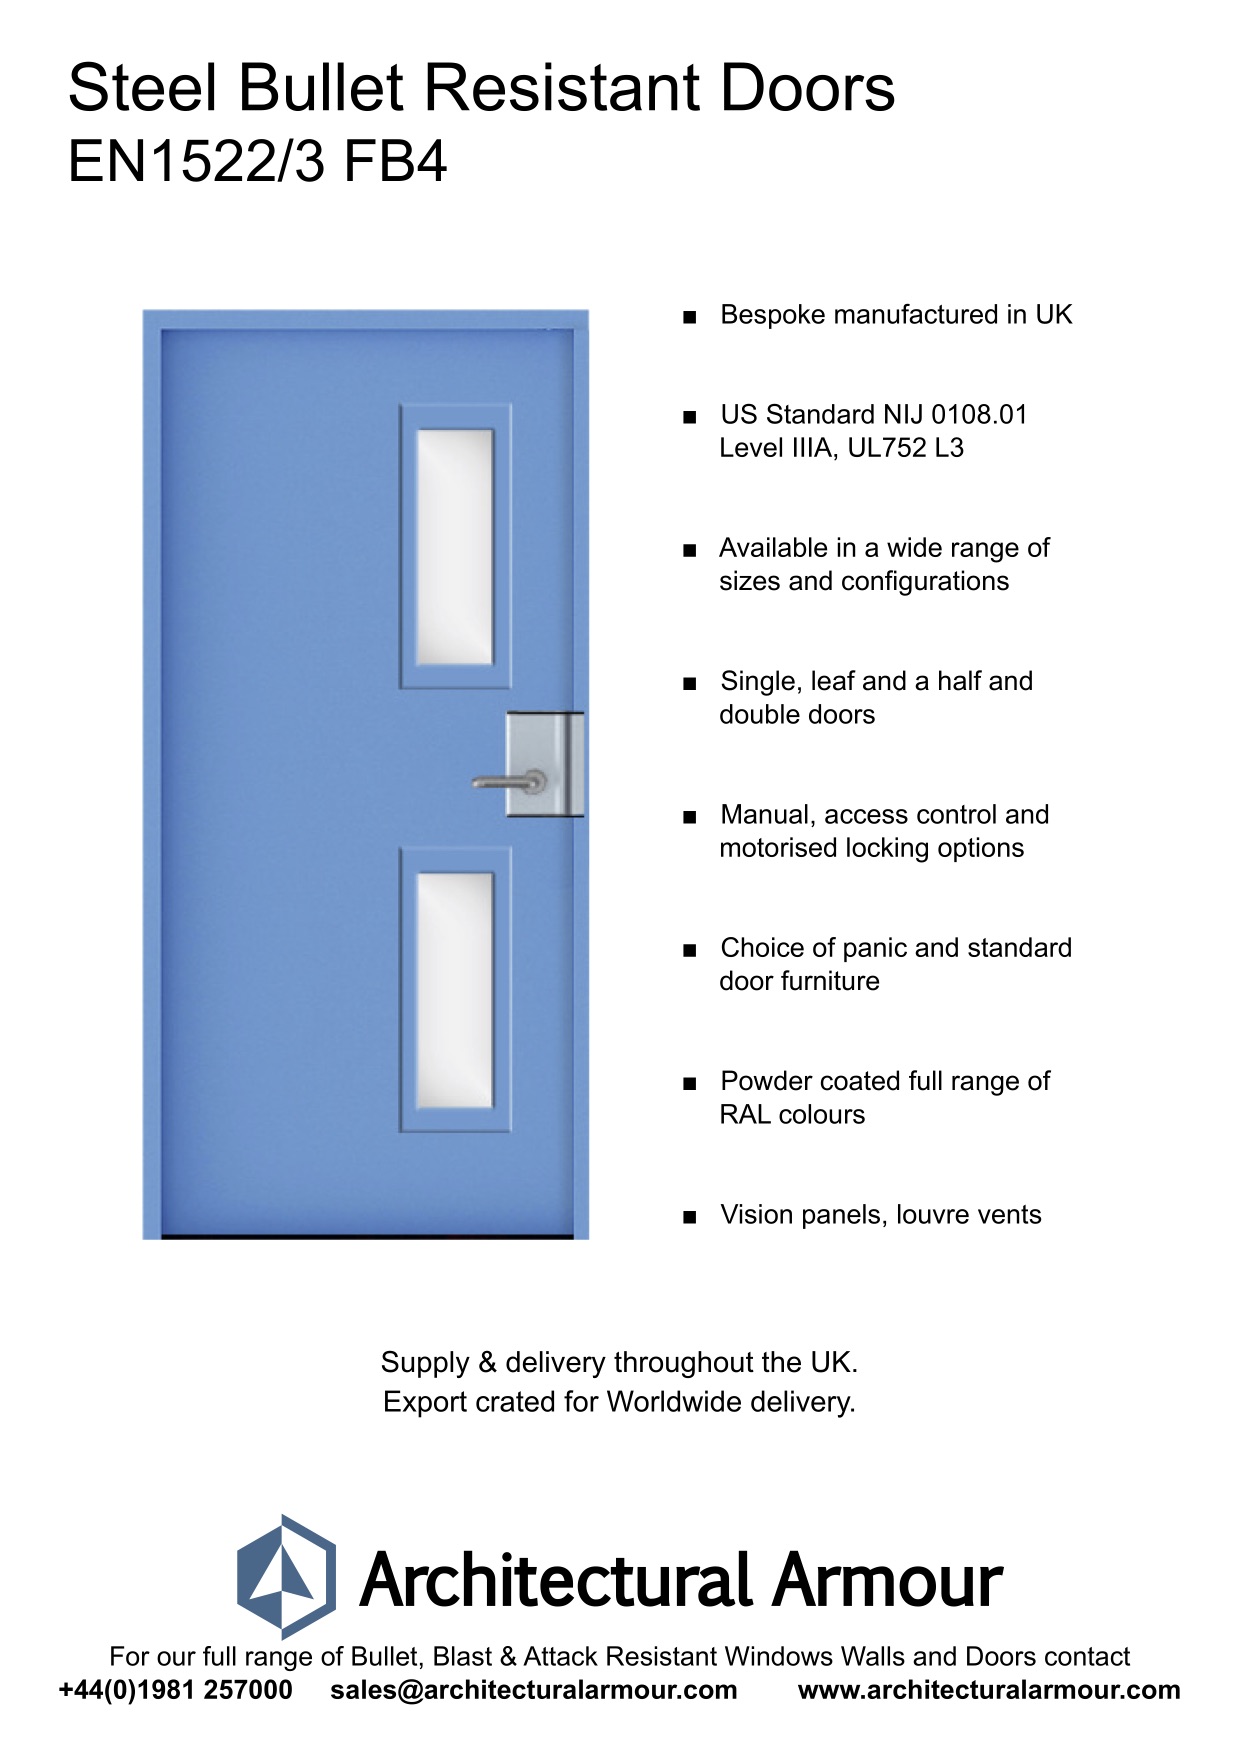 EN1522-3-FB4-Bullet-Resistant-Metal-Security-Door-UK